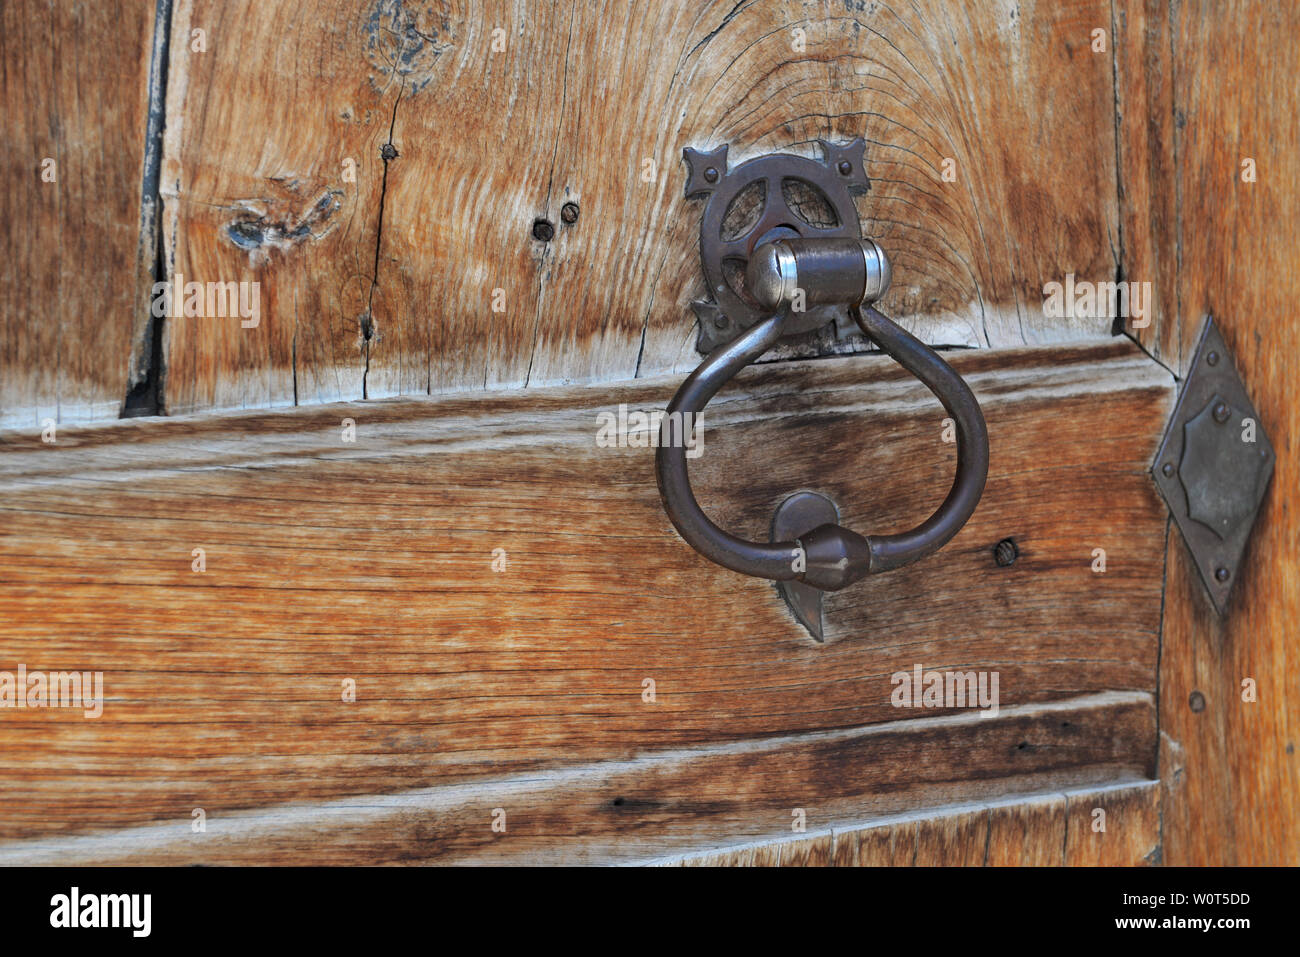 In der Nähe von Metall auf eine alte hölzerne Tür klopfen Stockfoto